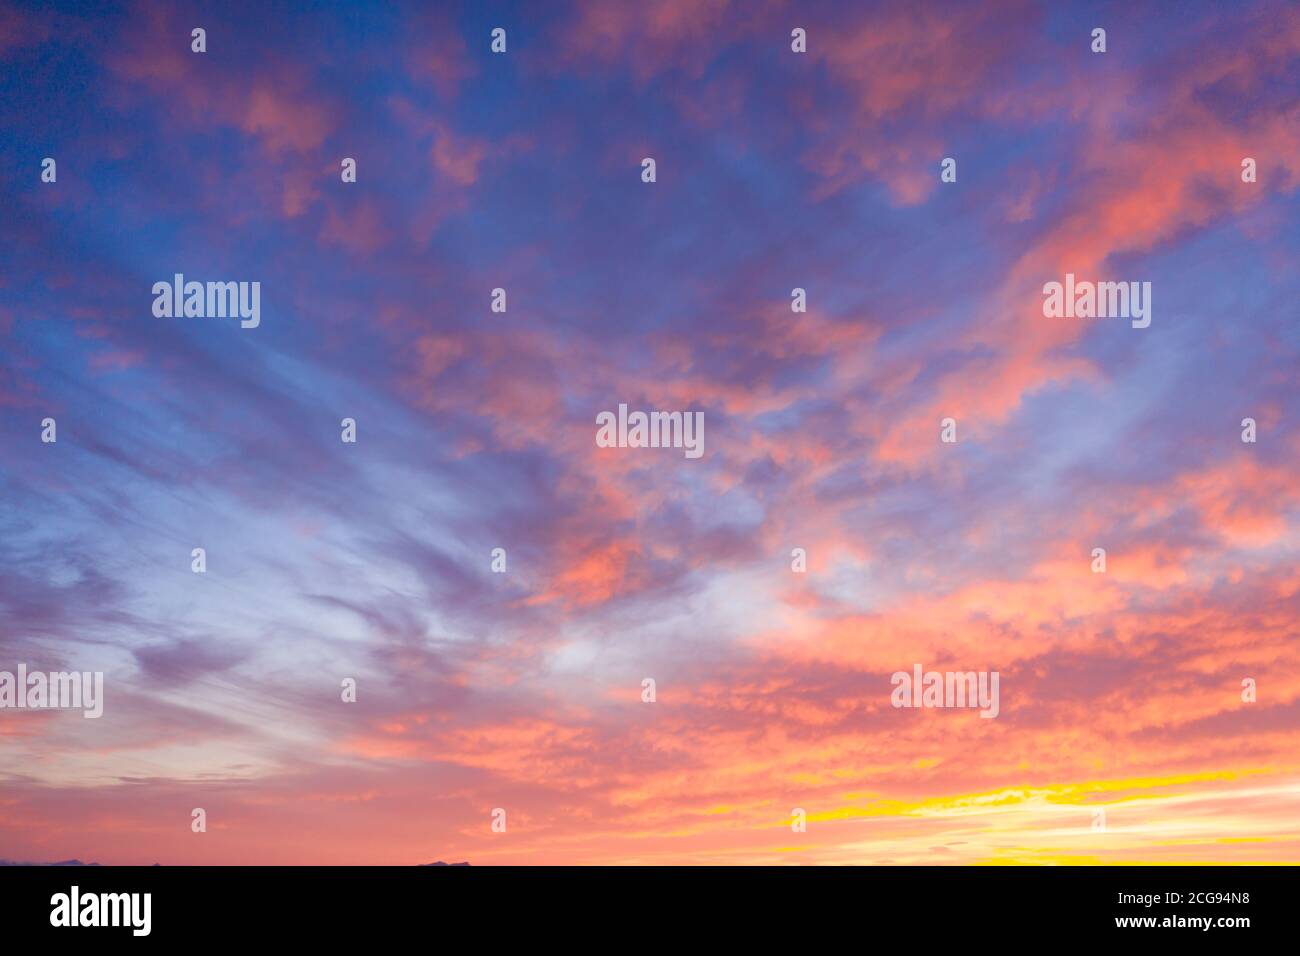 Magnifiques nuages de coucher de soleil dans des couleurs roses. Résumé de la nature Banque D'Images